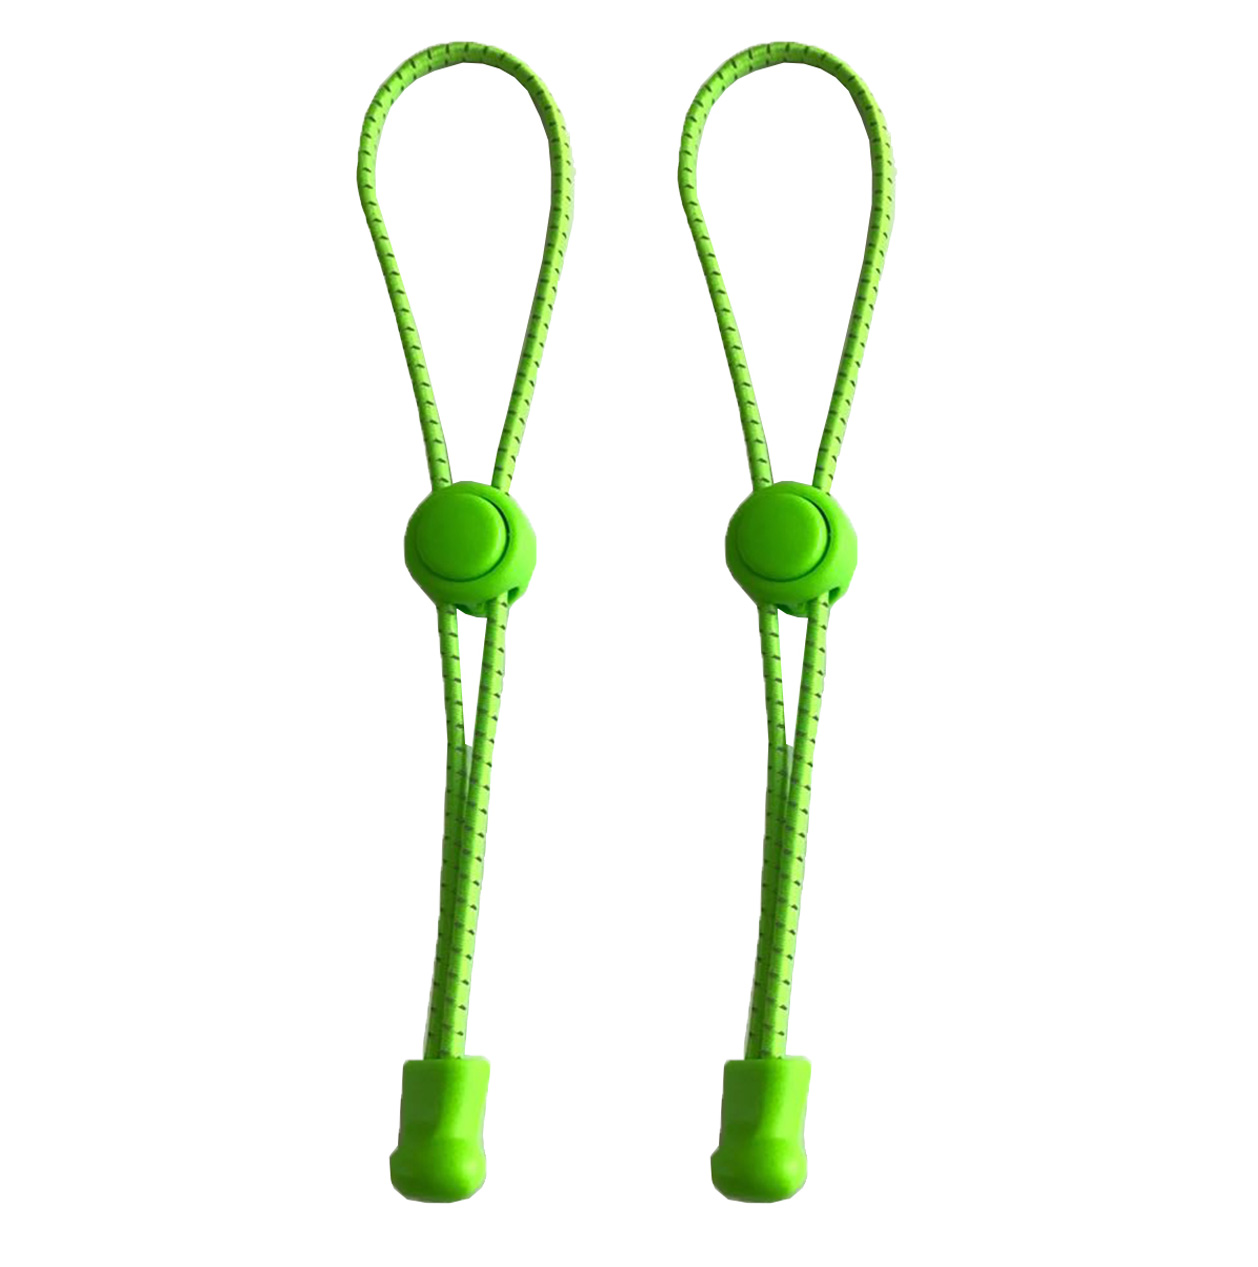 Green-Reflective-3Elastic-Lock-No-Tie-Shoelaces.jpg